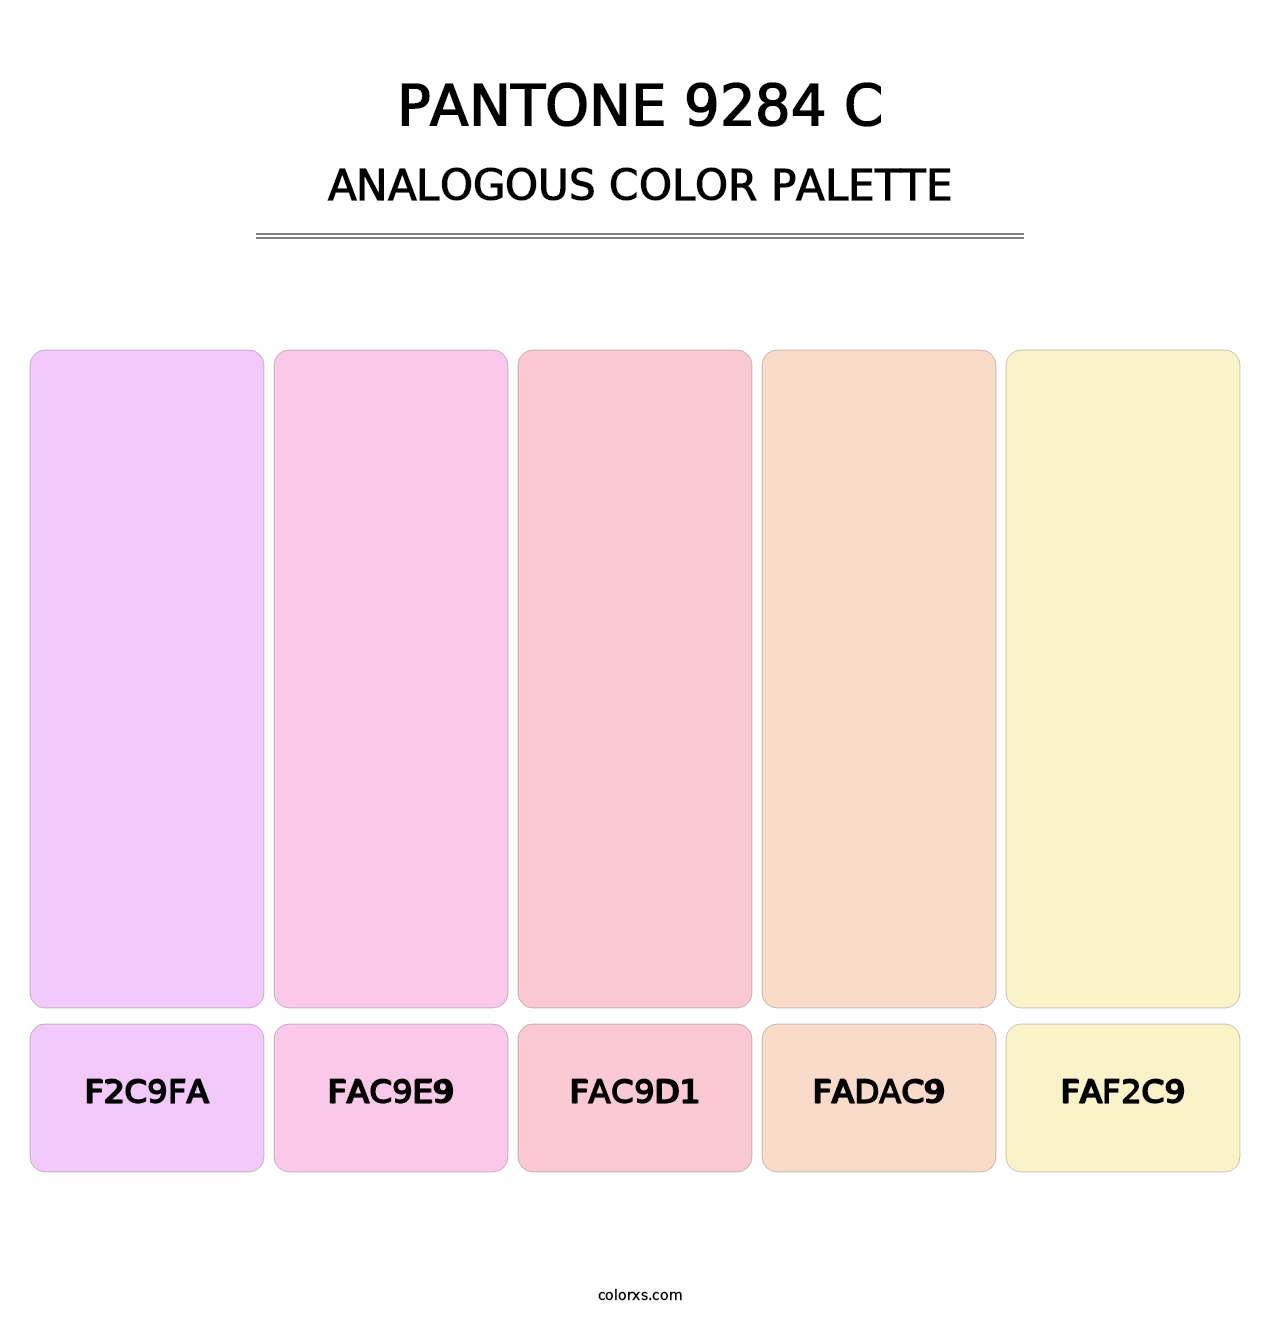 PANTONE 9284 C - Analogous Color Palette